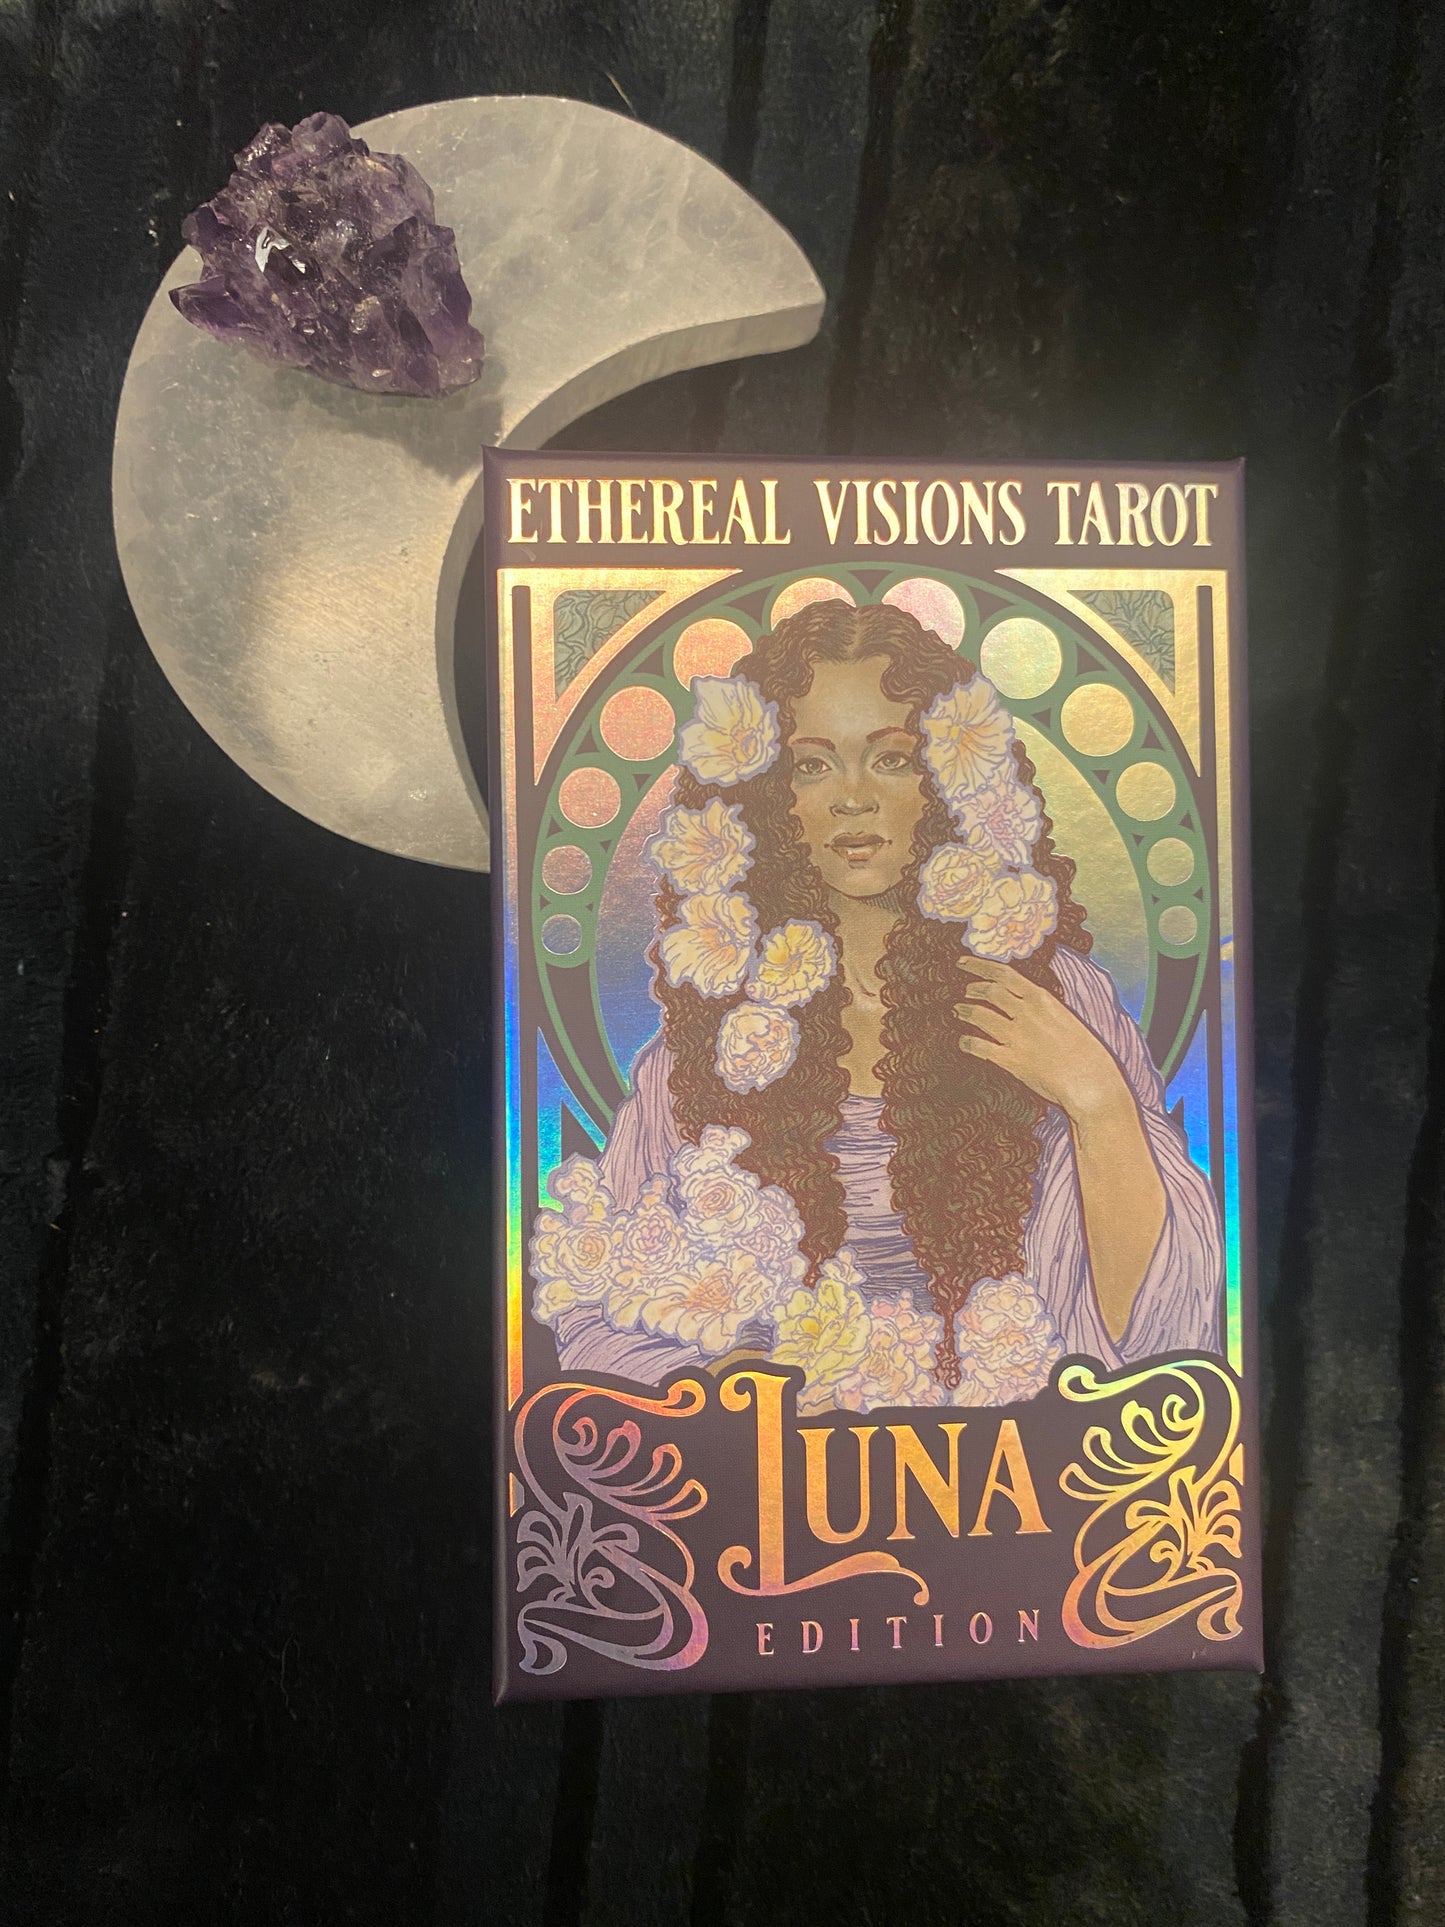 Ethereal Visions Tarot - Luna Edition by Matt Hughes